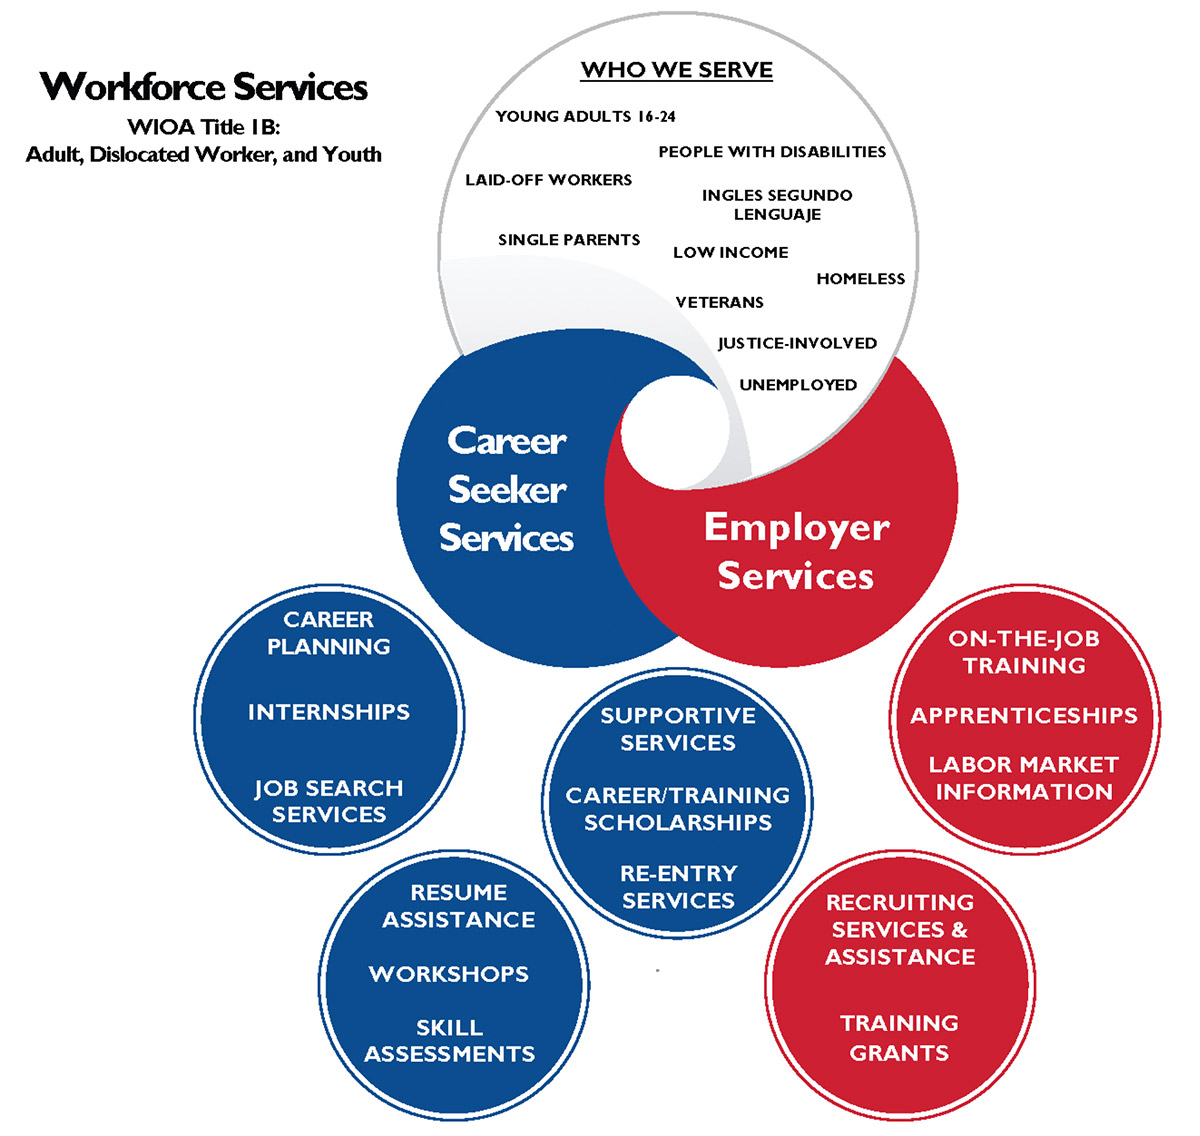 Workforce Services